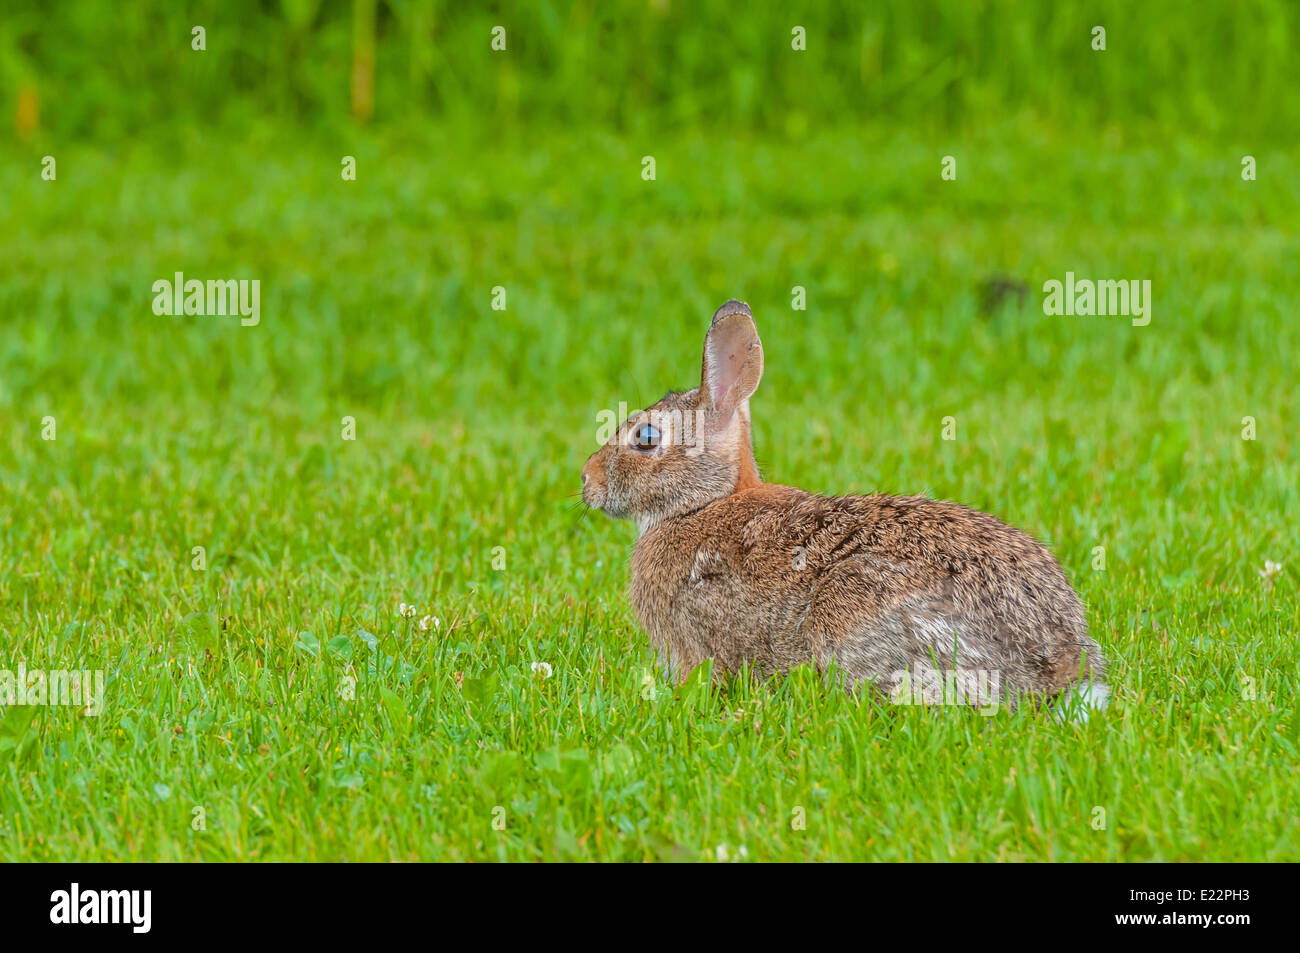 Cottontail Rabbit sentados en el césped mirando a la izquierda. Foto de stock